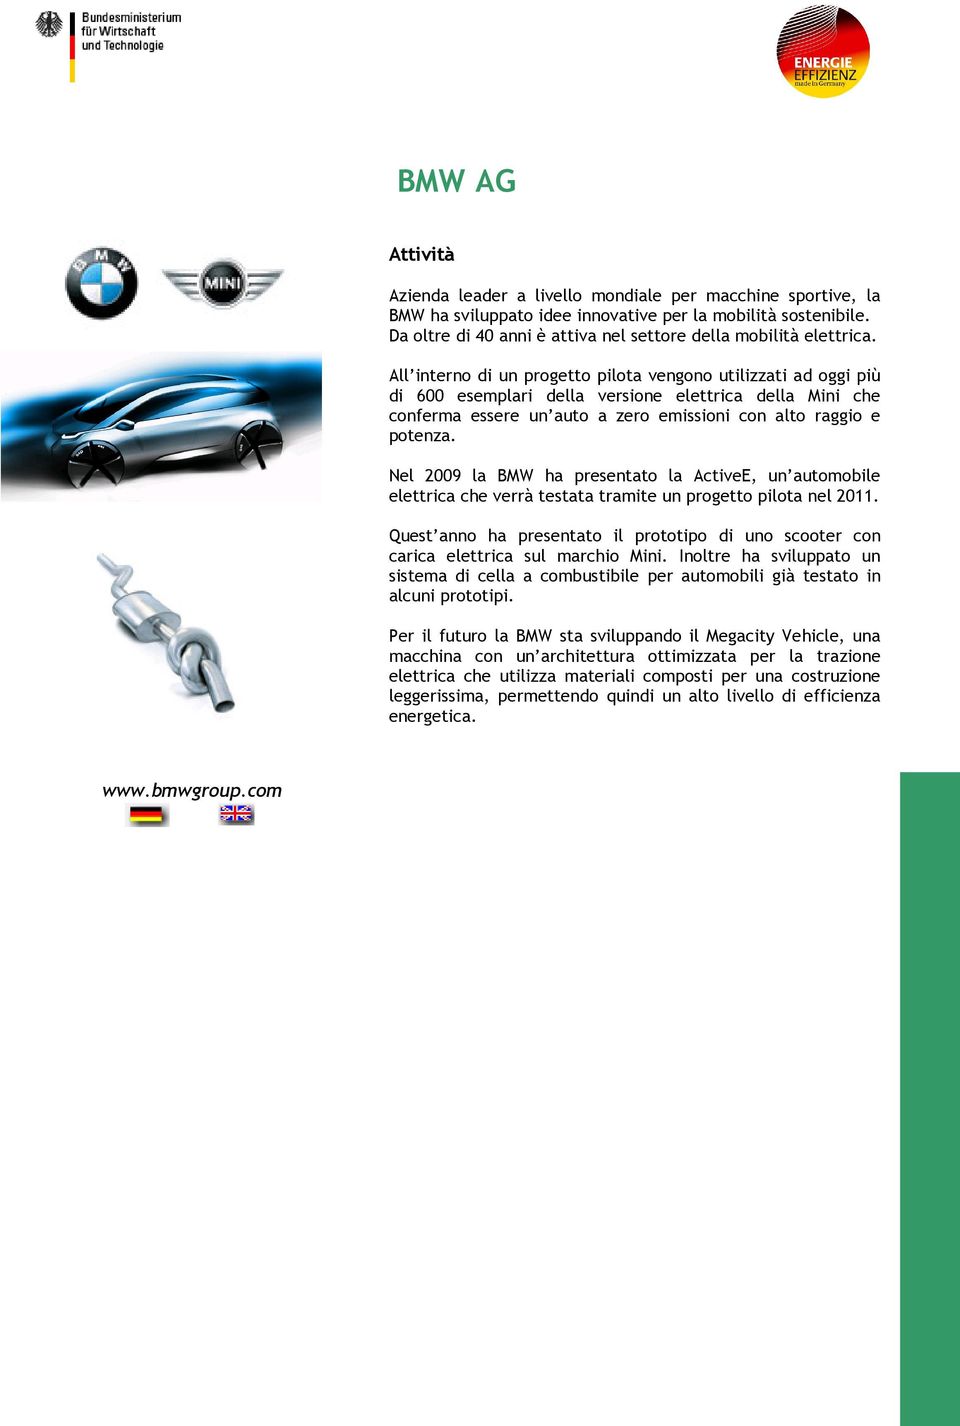 Nel 2009 la BMW ha presentato la ActiveE, un automobile elettrica che verrà testata tramite un progetto pilota nel 2011.